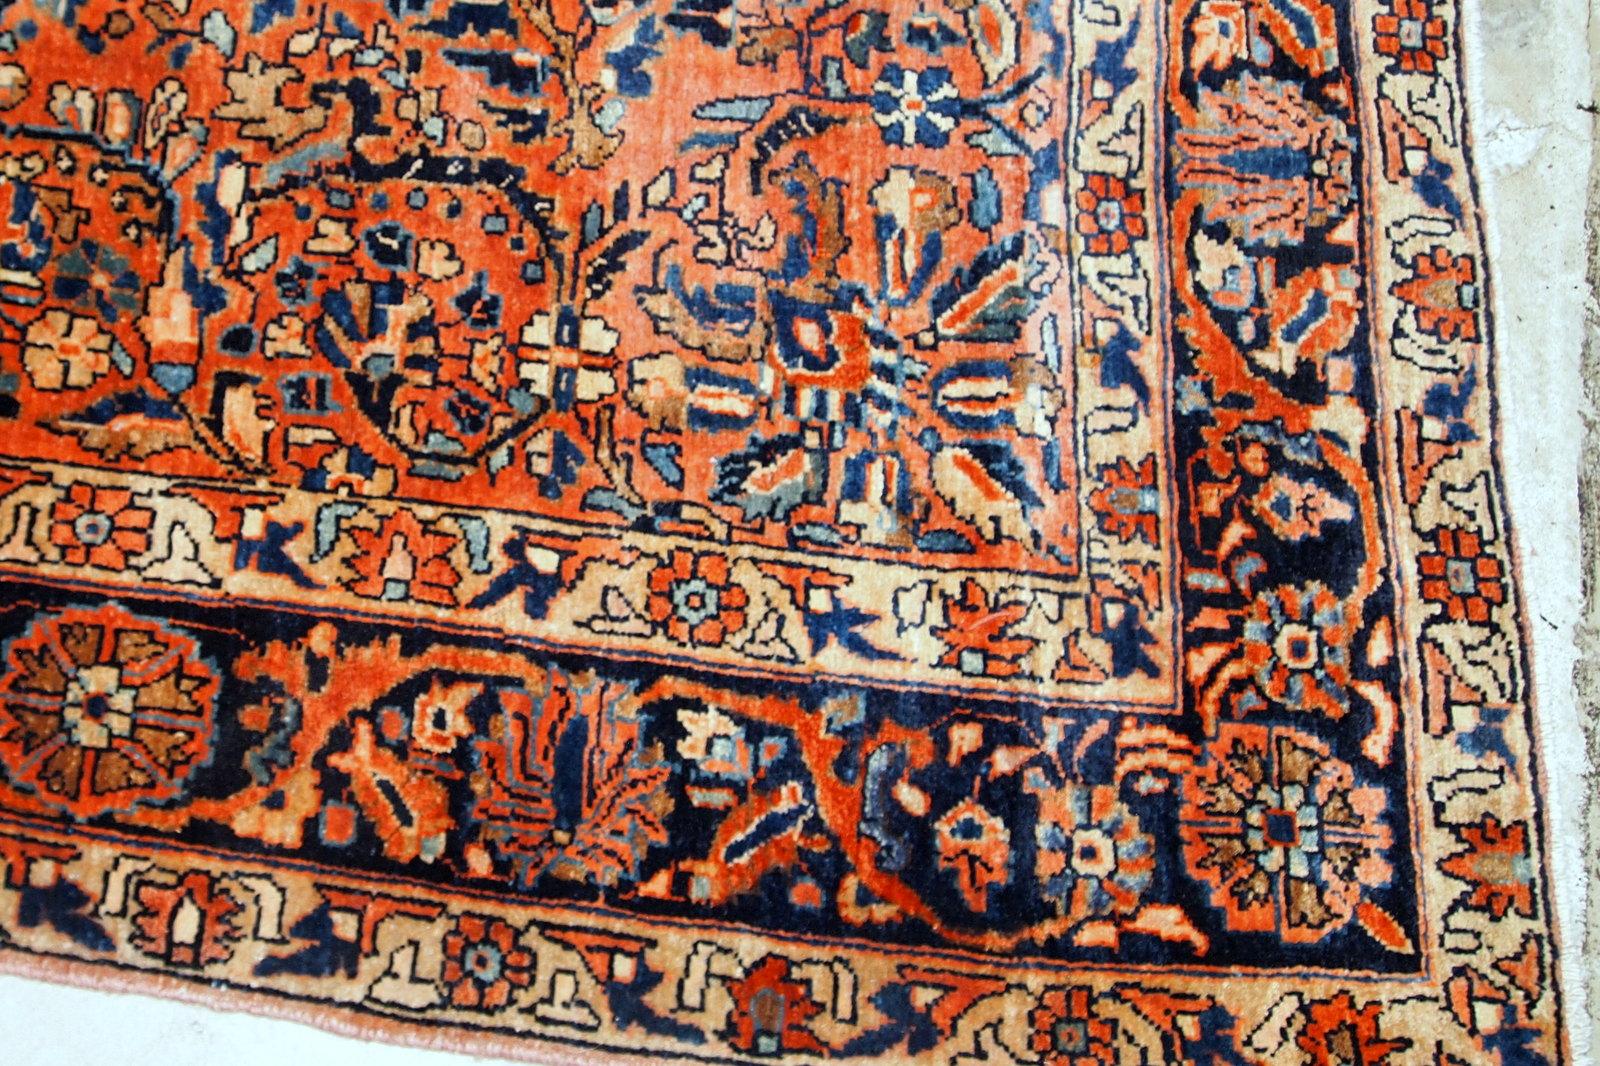 Handgefertigter antiker Sarouk-Teppich vom Anfang des 20. Jahrhunderts. Der Teppich ist in gutem Originalzustand und aus roter Wolle.

?-Zustand: original gut,

-ca. 1920er Jahre,

-Größe: 4,1' x 6,7' (125cm x 204cm),

- Material: